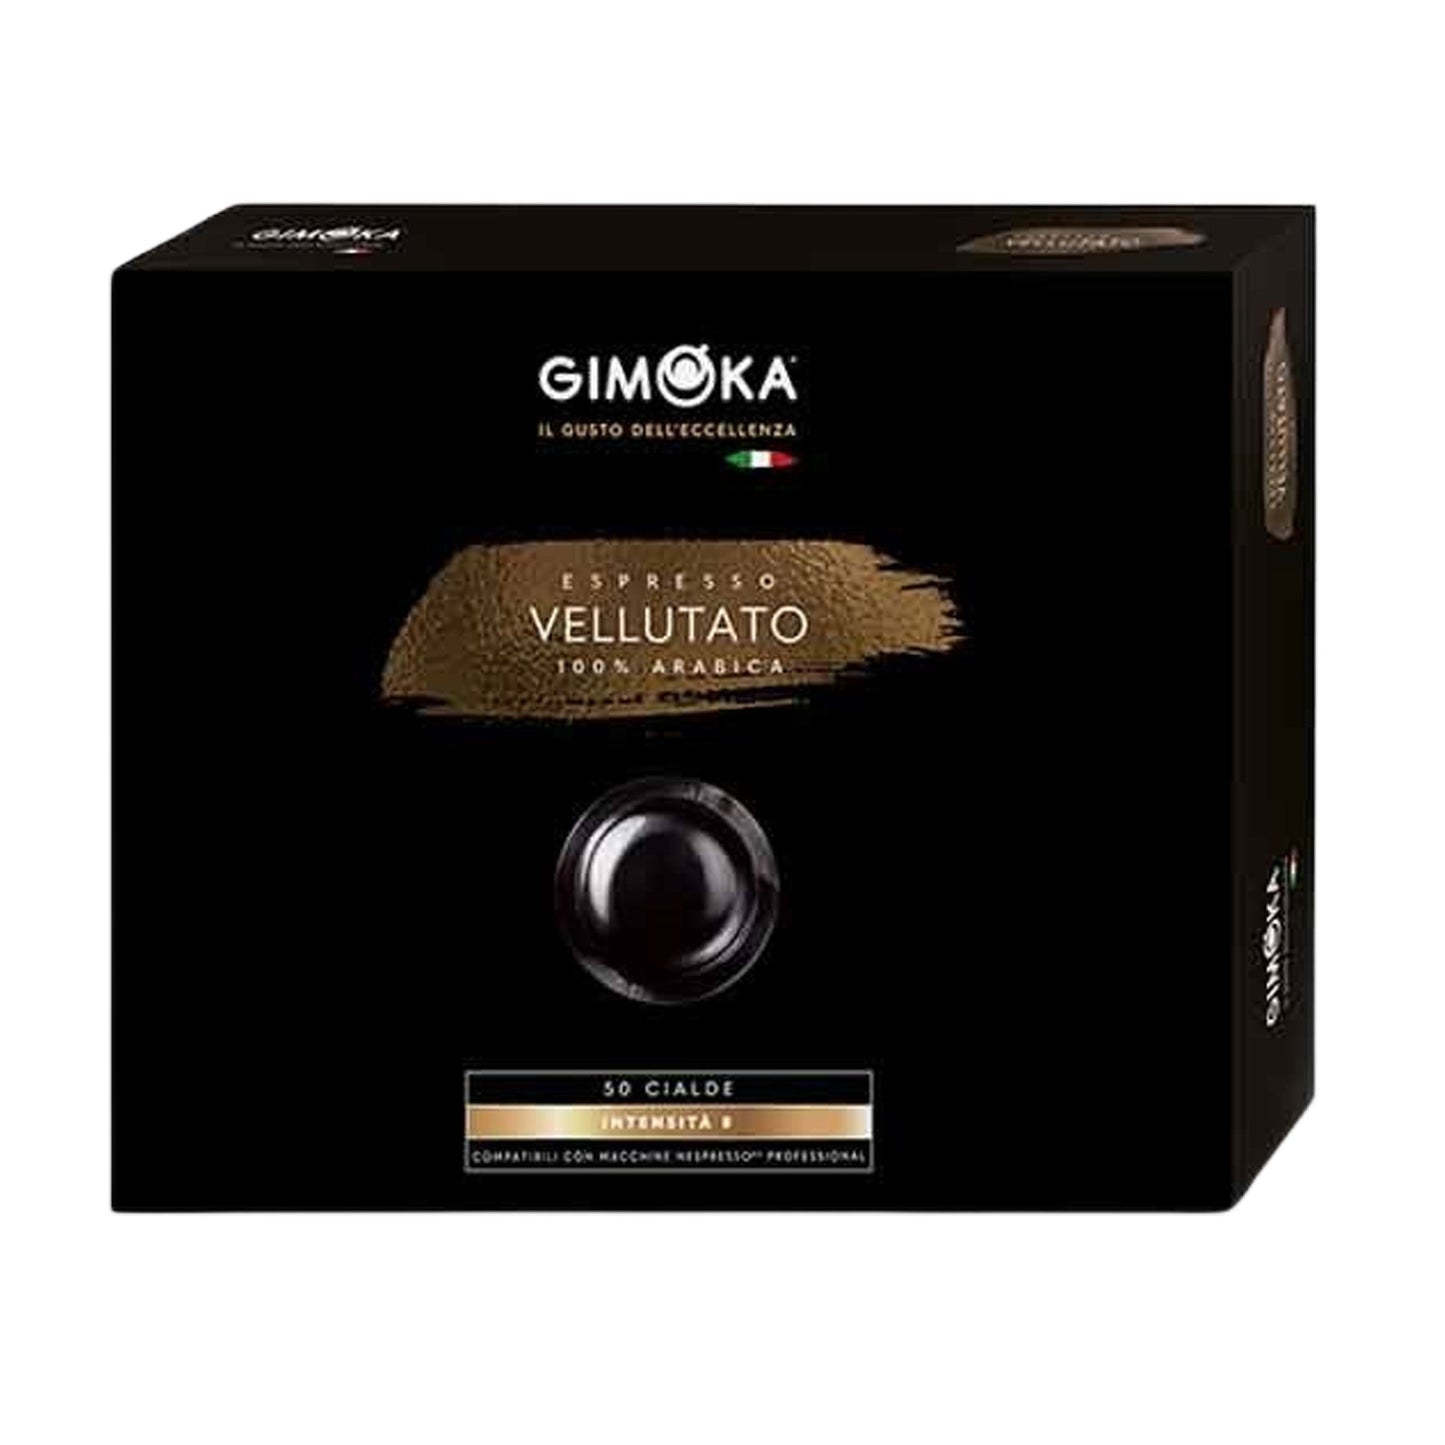 KAFFEE-PADS Espresso Vellutato GIMOKA Nespresso® Professional